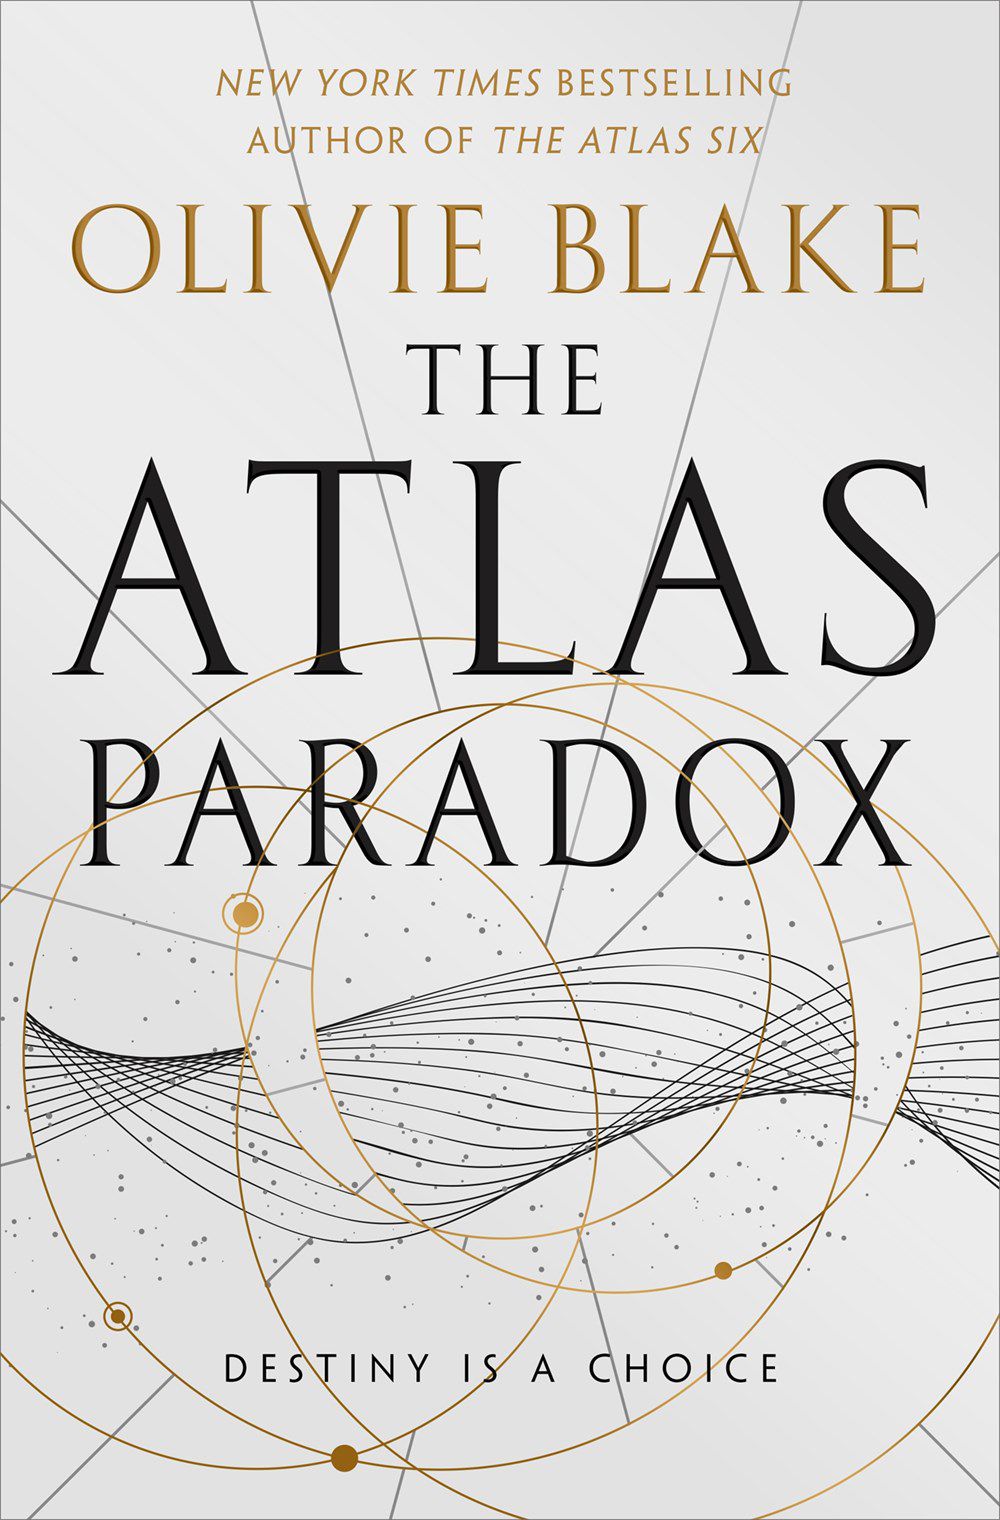 Immagine di copertina per The Atlas Paradox di Olivie Blake, con forme geometriche su di esso